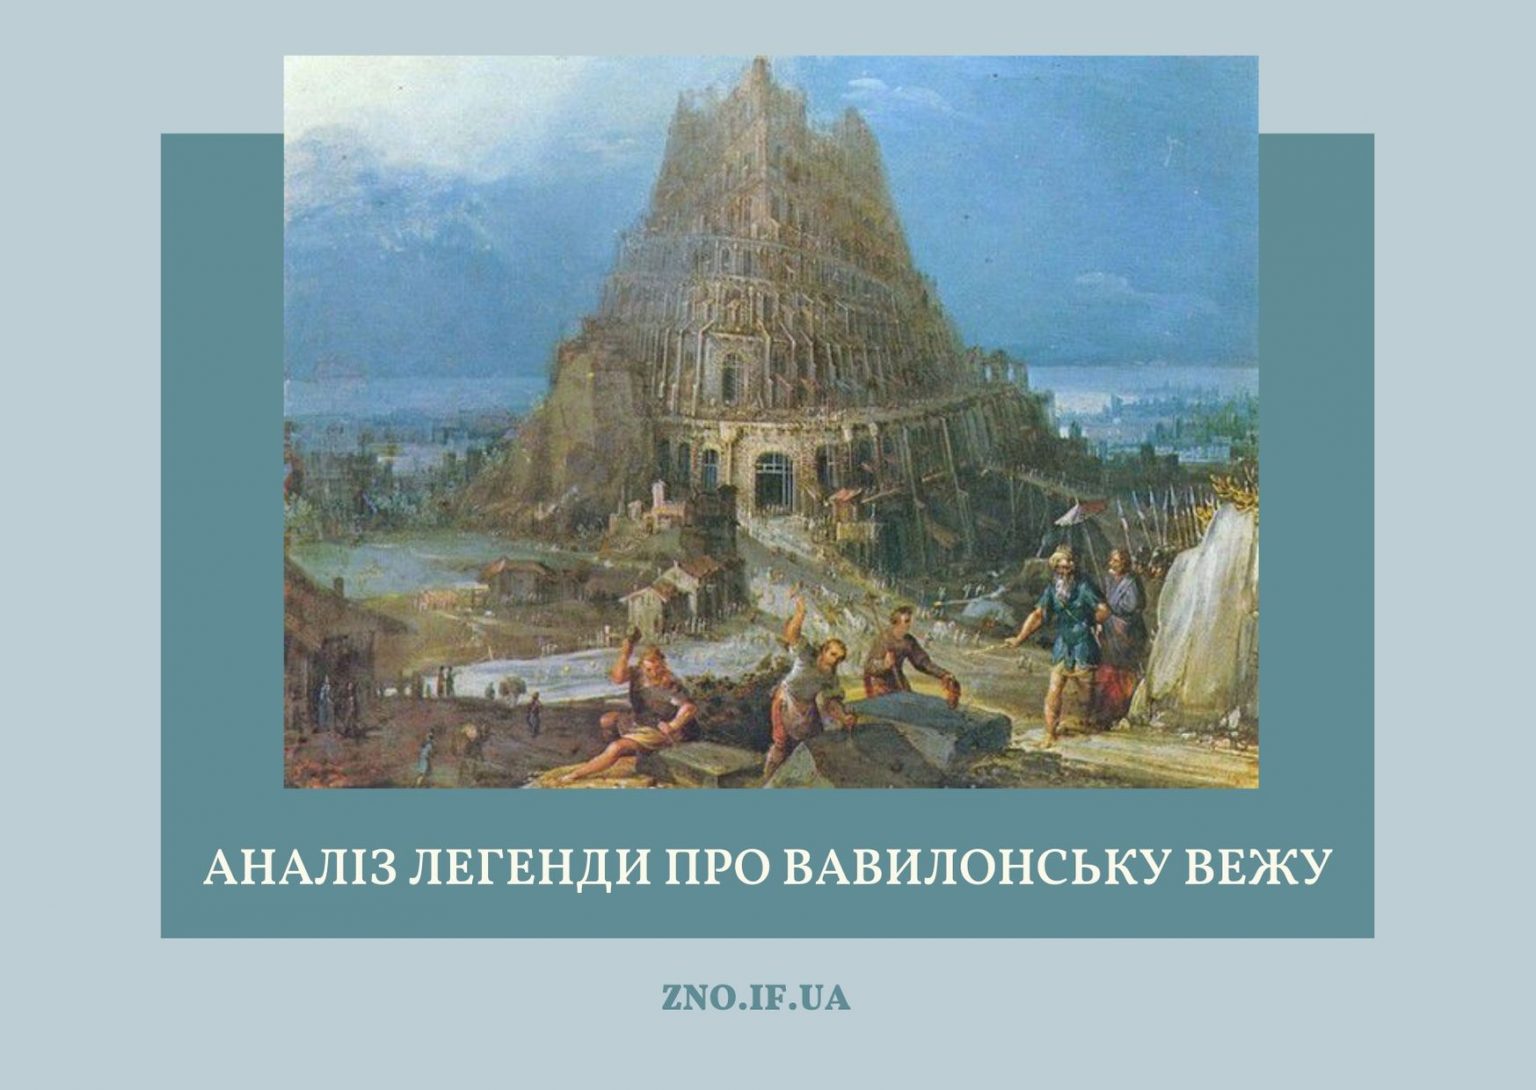 Аналіз легенди про Вавилонську вежу